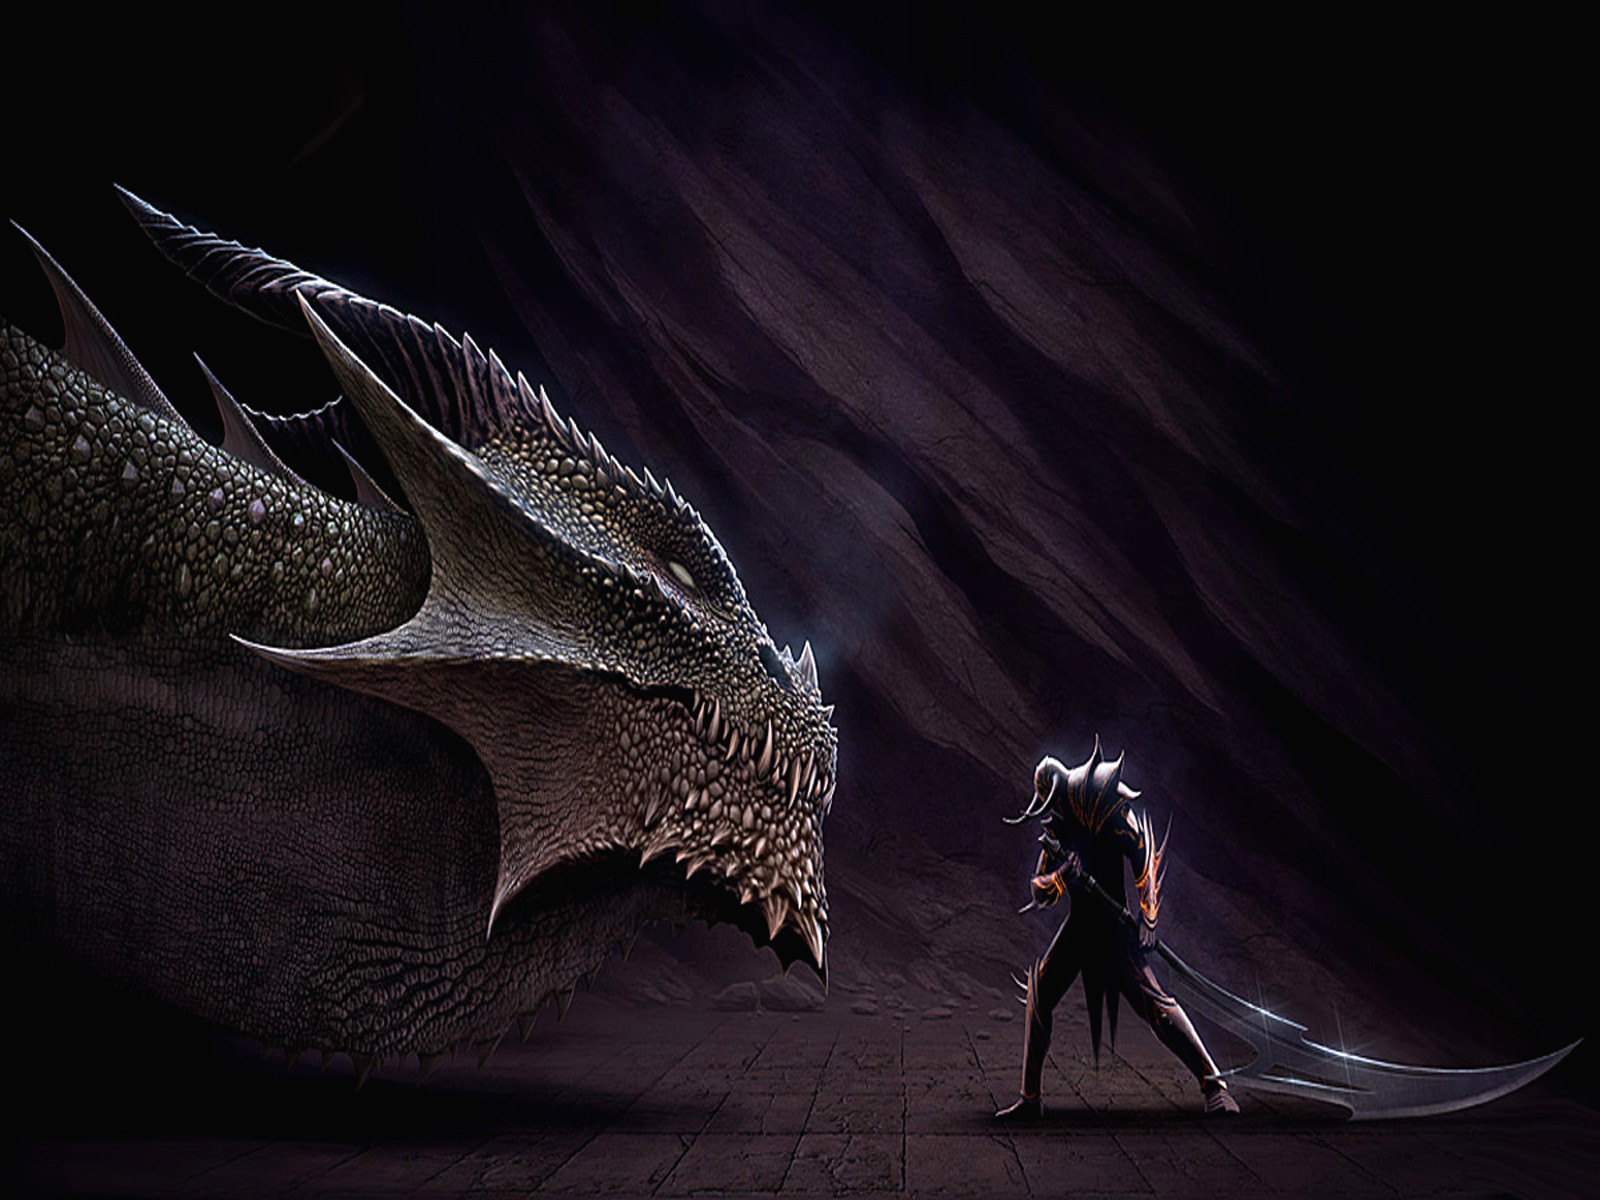 dragones wallpaper hd,drachen,cg kunstwerk,erfundener charakter,dunkelheit,mythische kreatur